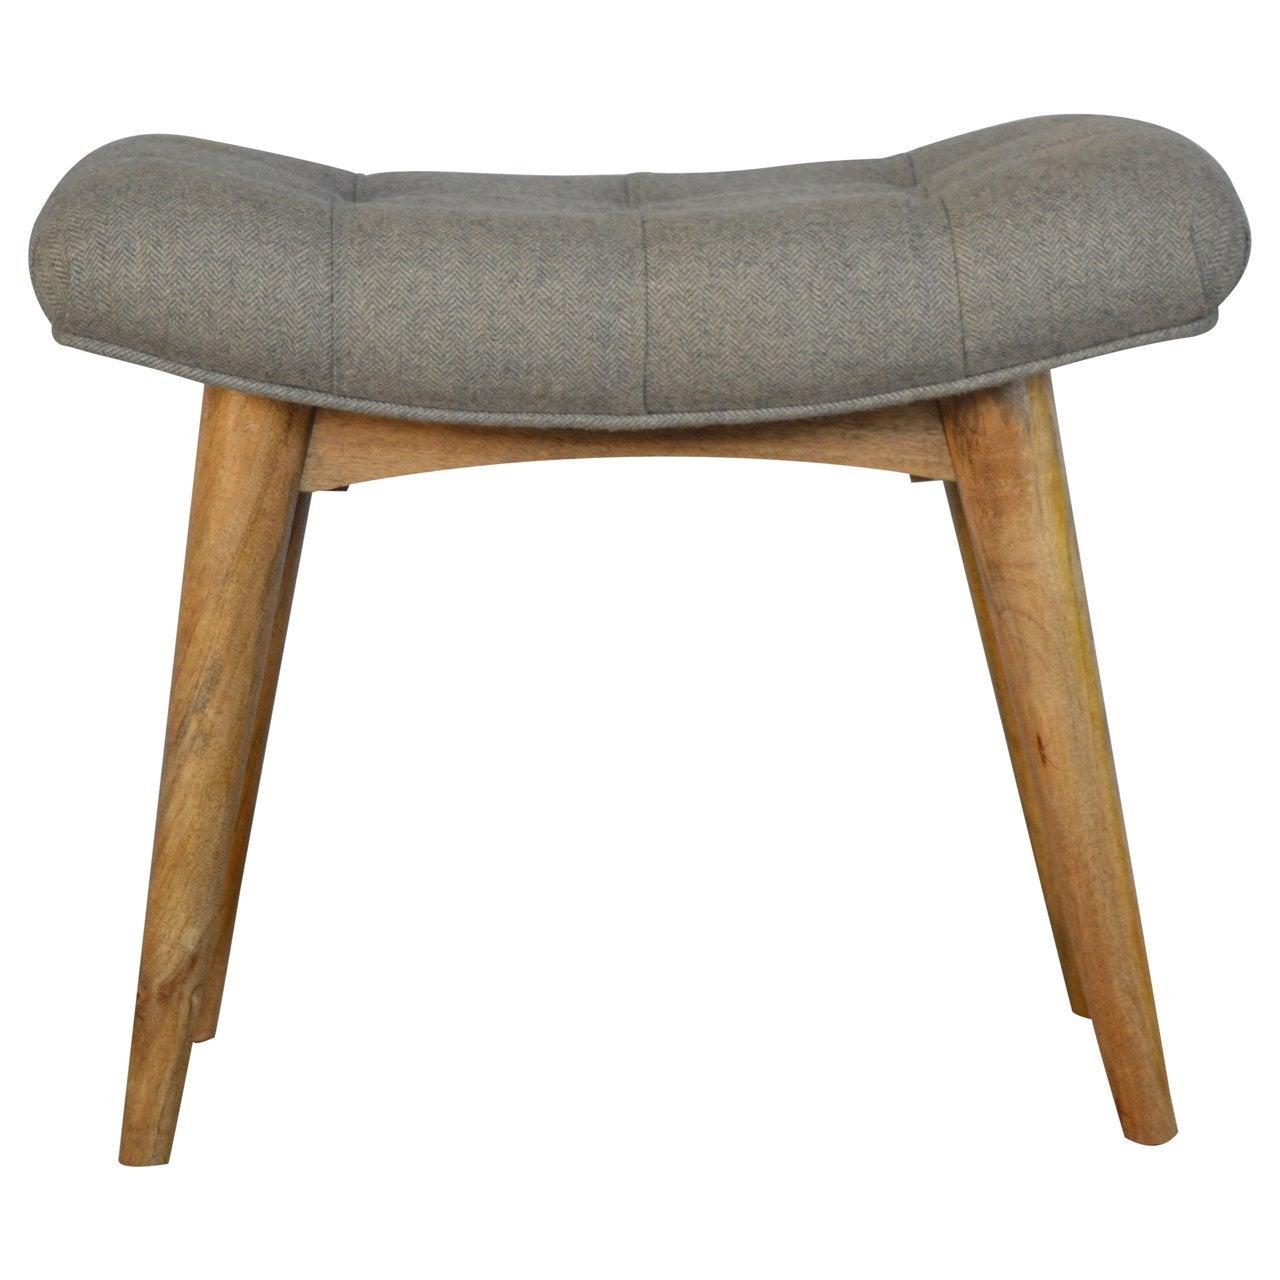 Curved grey tweed bench - crimblefest furniture - image 2